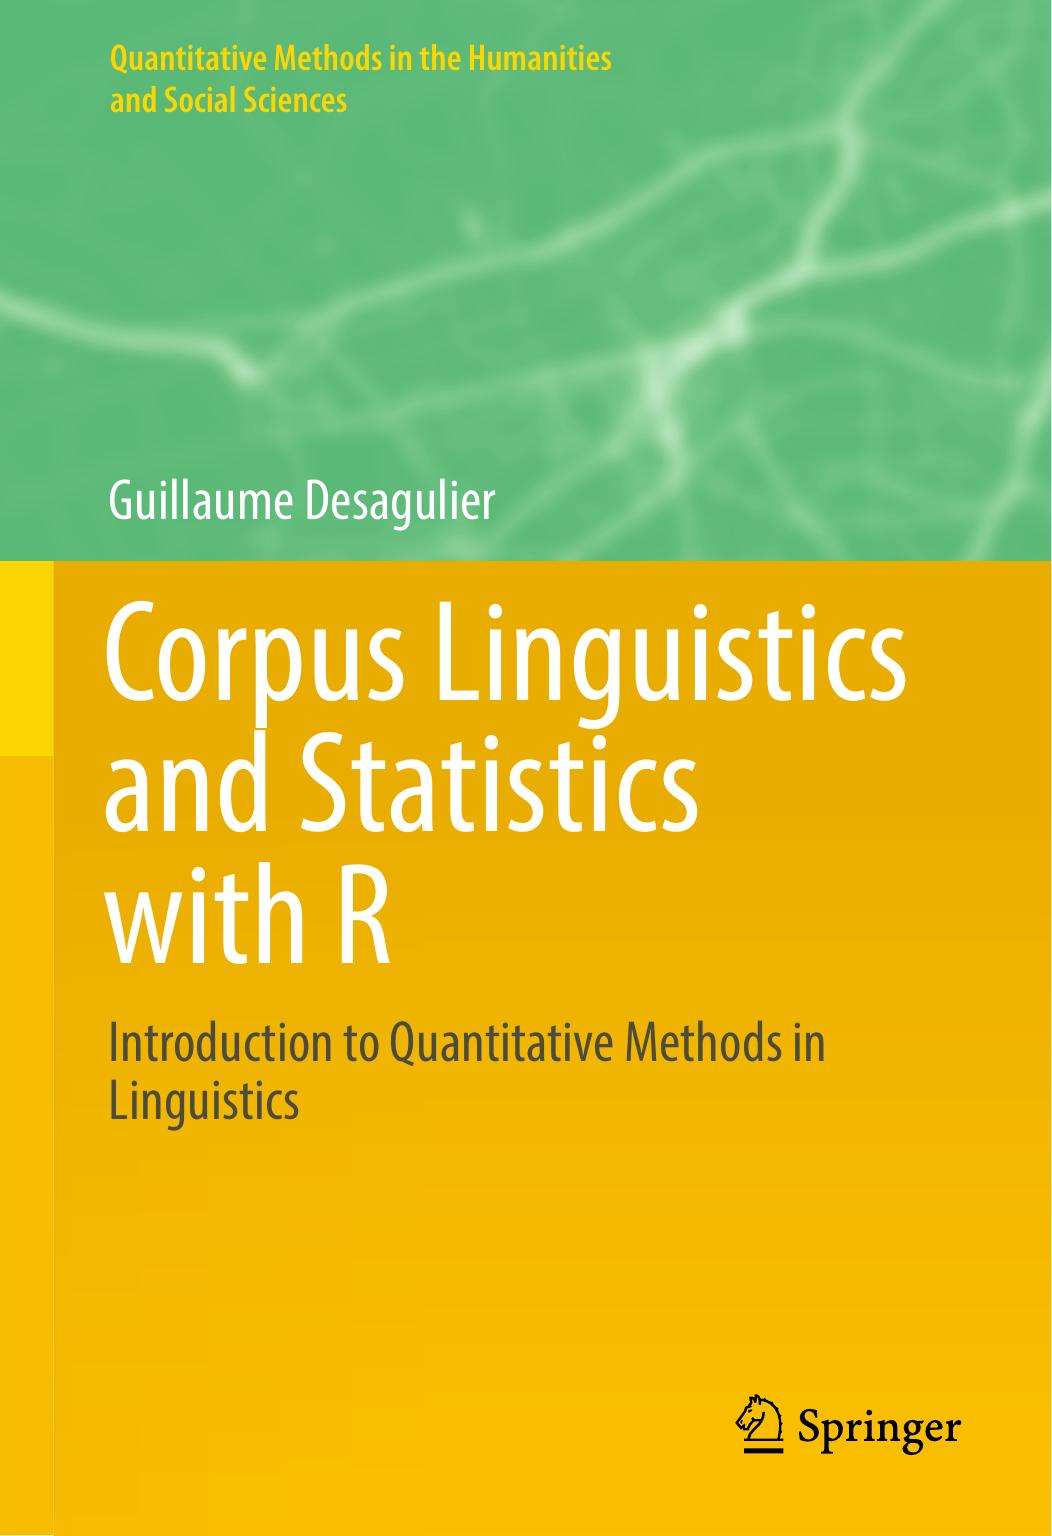 Corpus Linguistics and Statistics with R Introduction to Quantitative Methods in Linguistics 2017